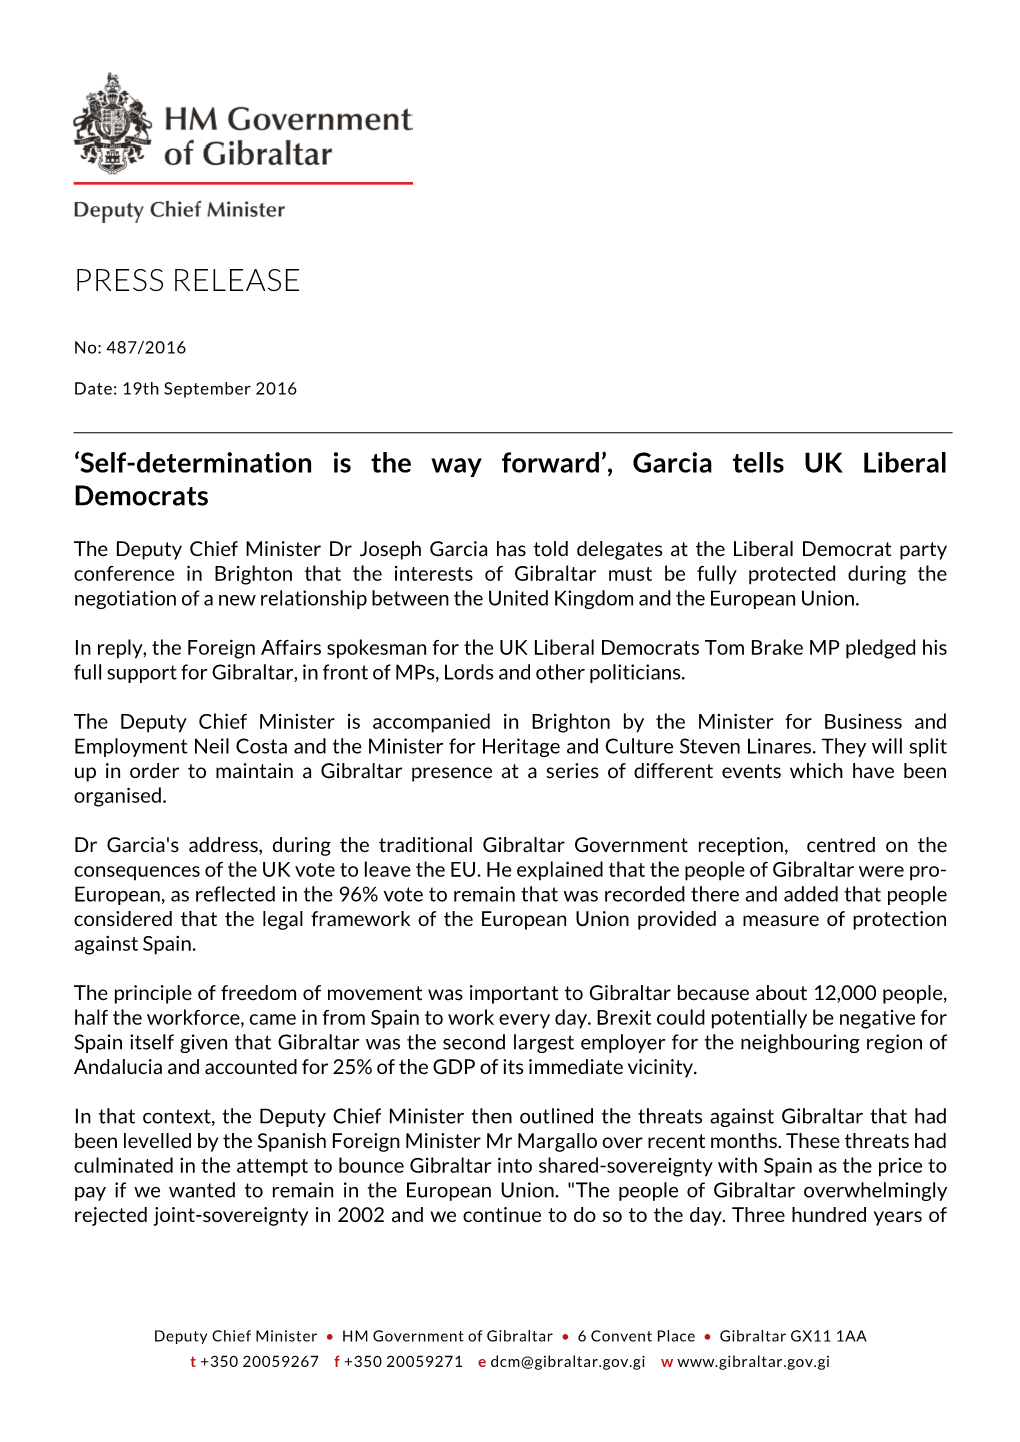 Garcia Tells UK Liberal Democrats